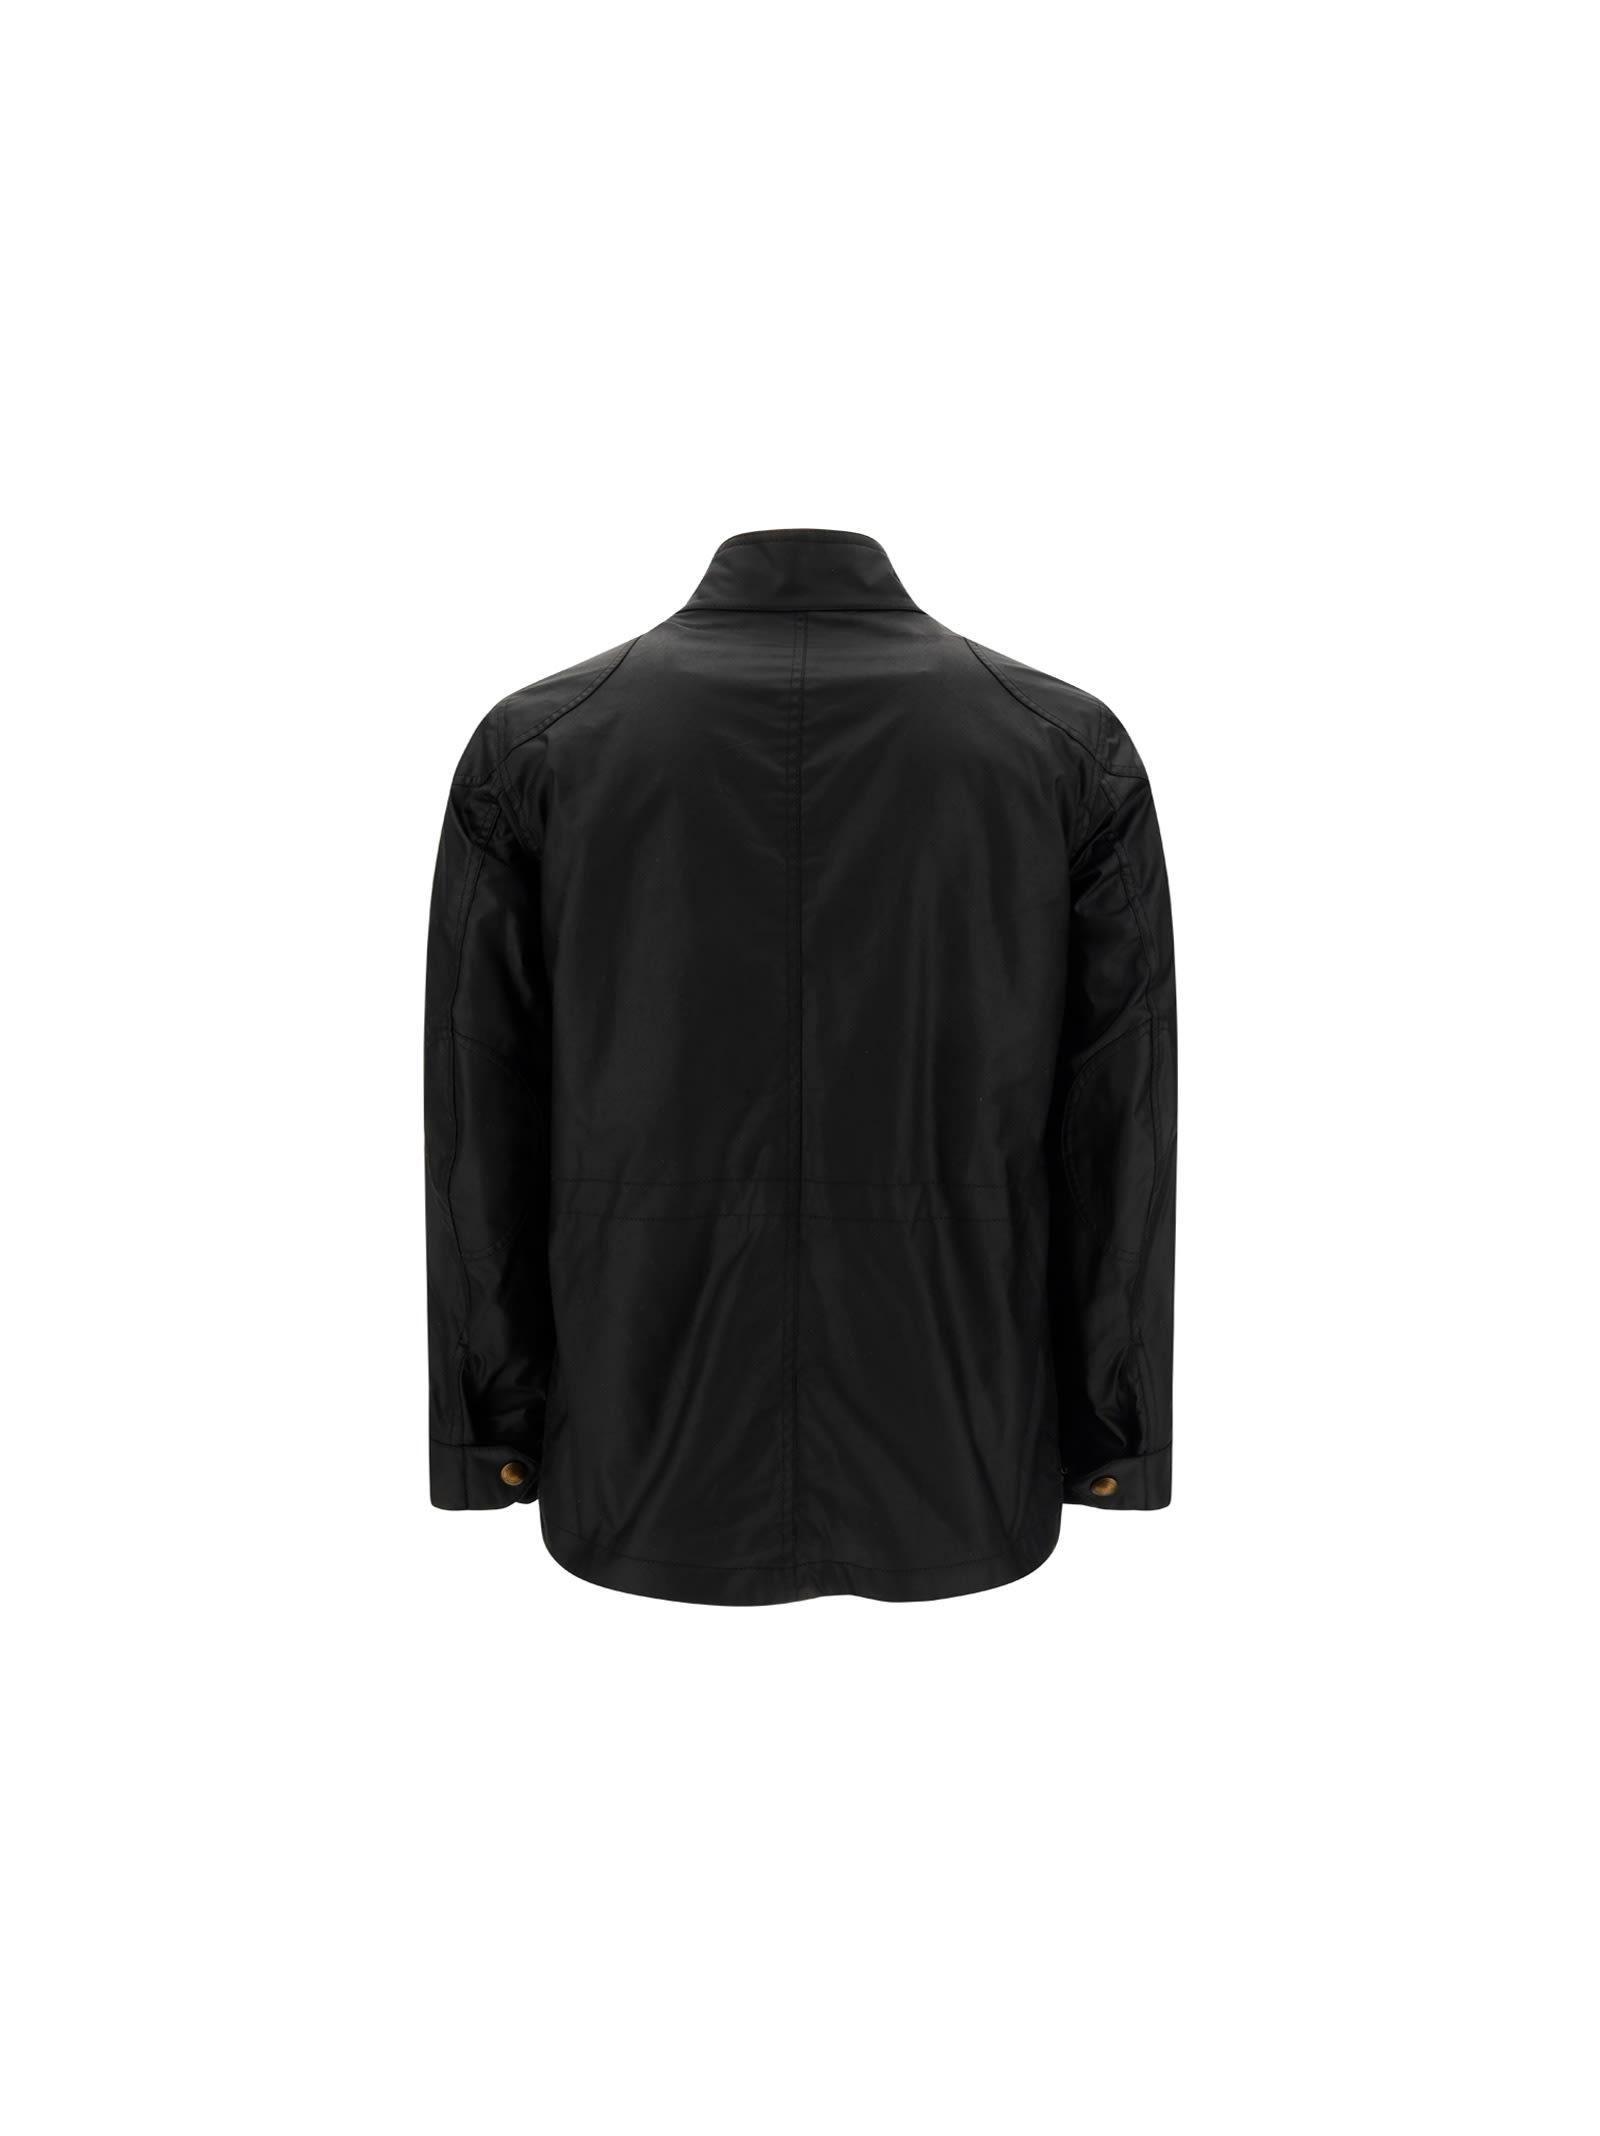 Belstaff Fieldmaster Jacket in Black for Men | Lyst